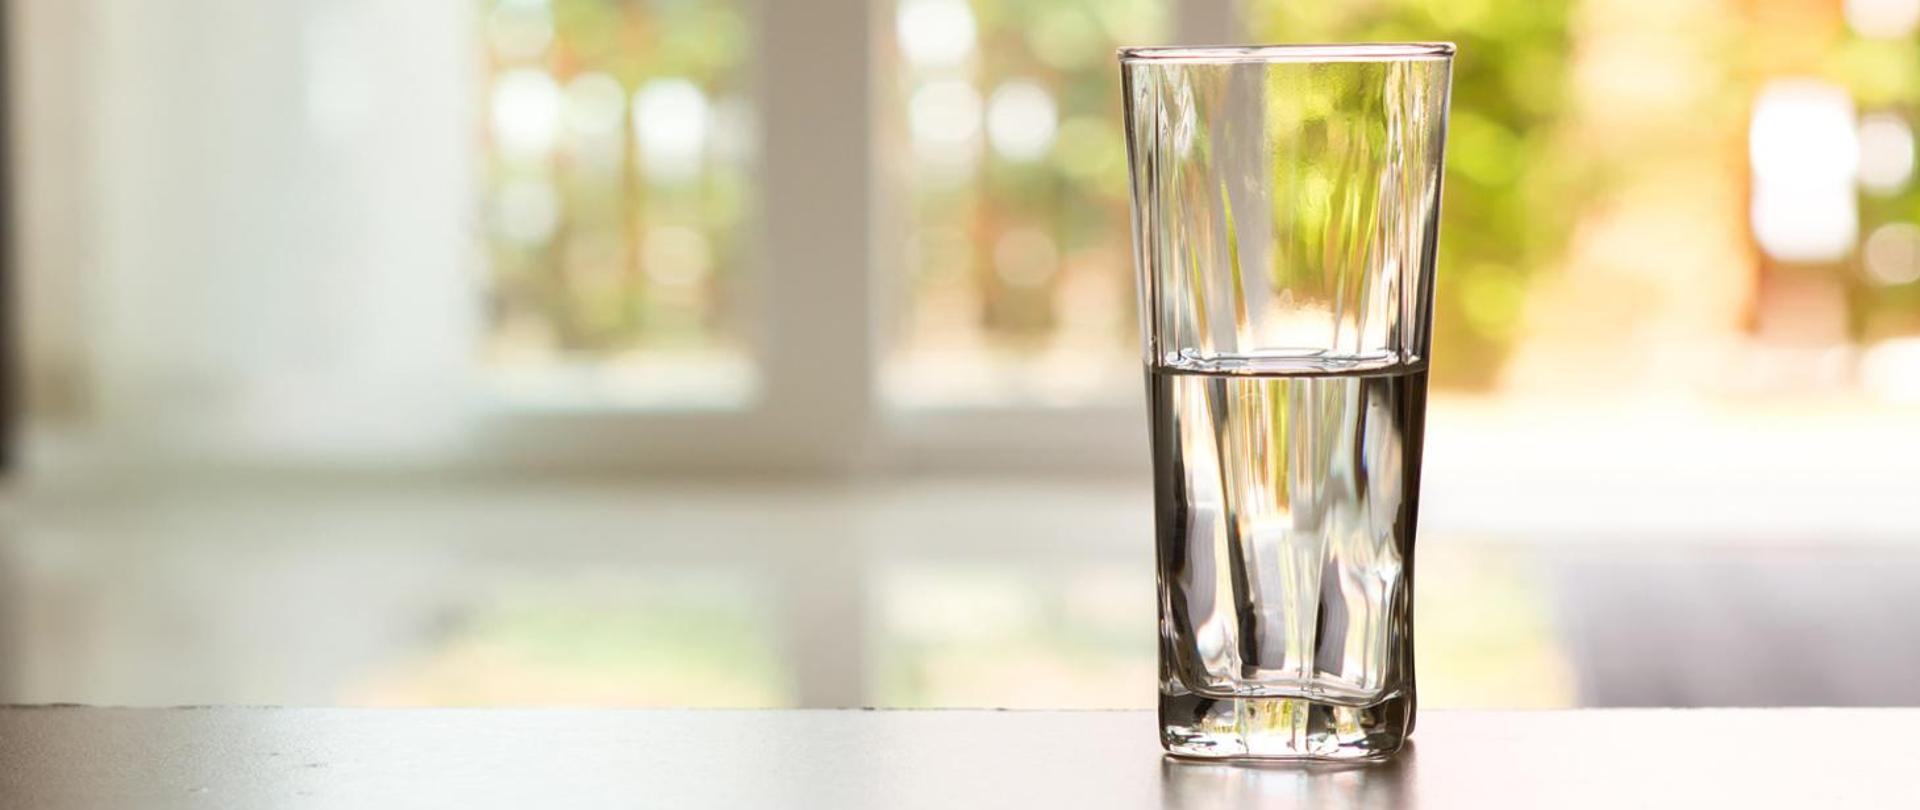 Na blacie po prawej stronie stoi szklanka do połowy wypełniona wodą